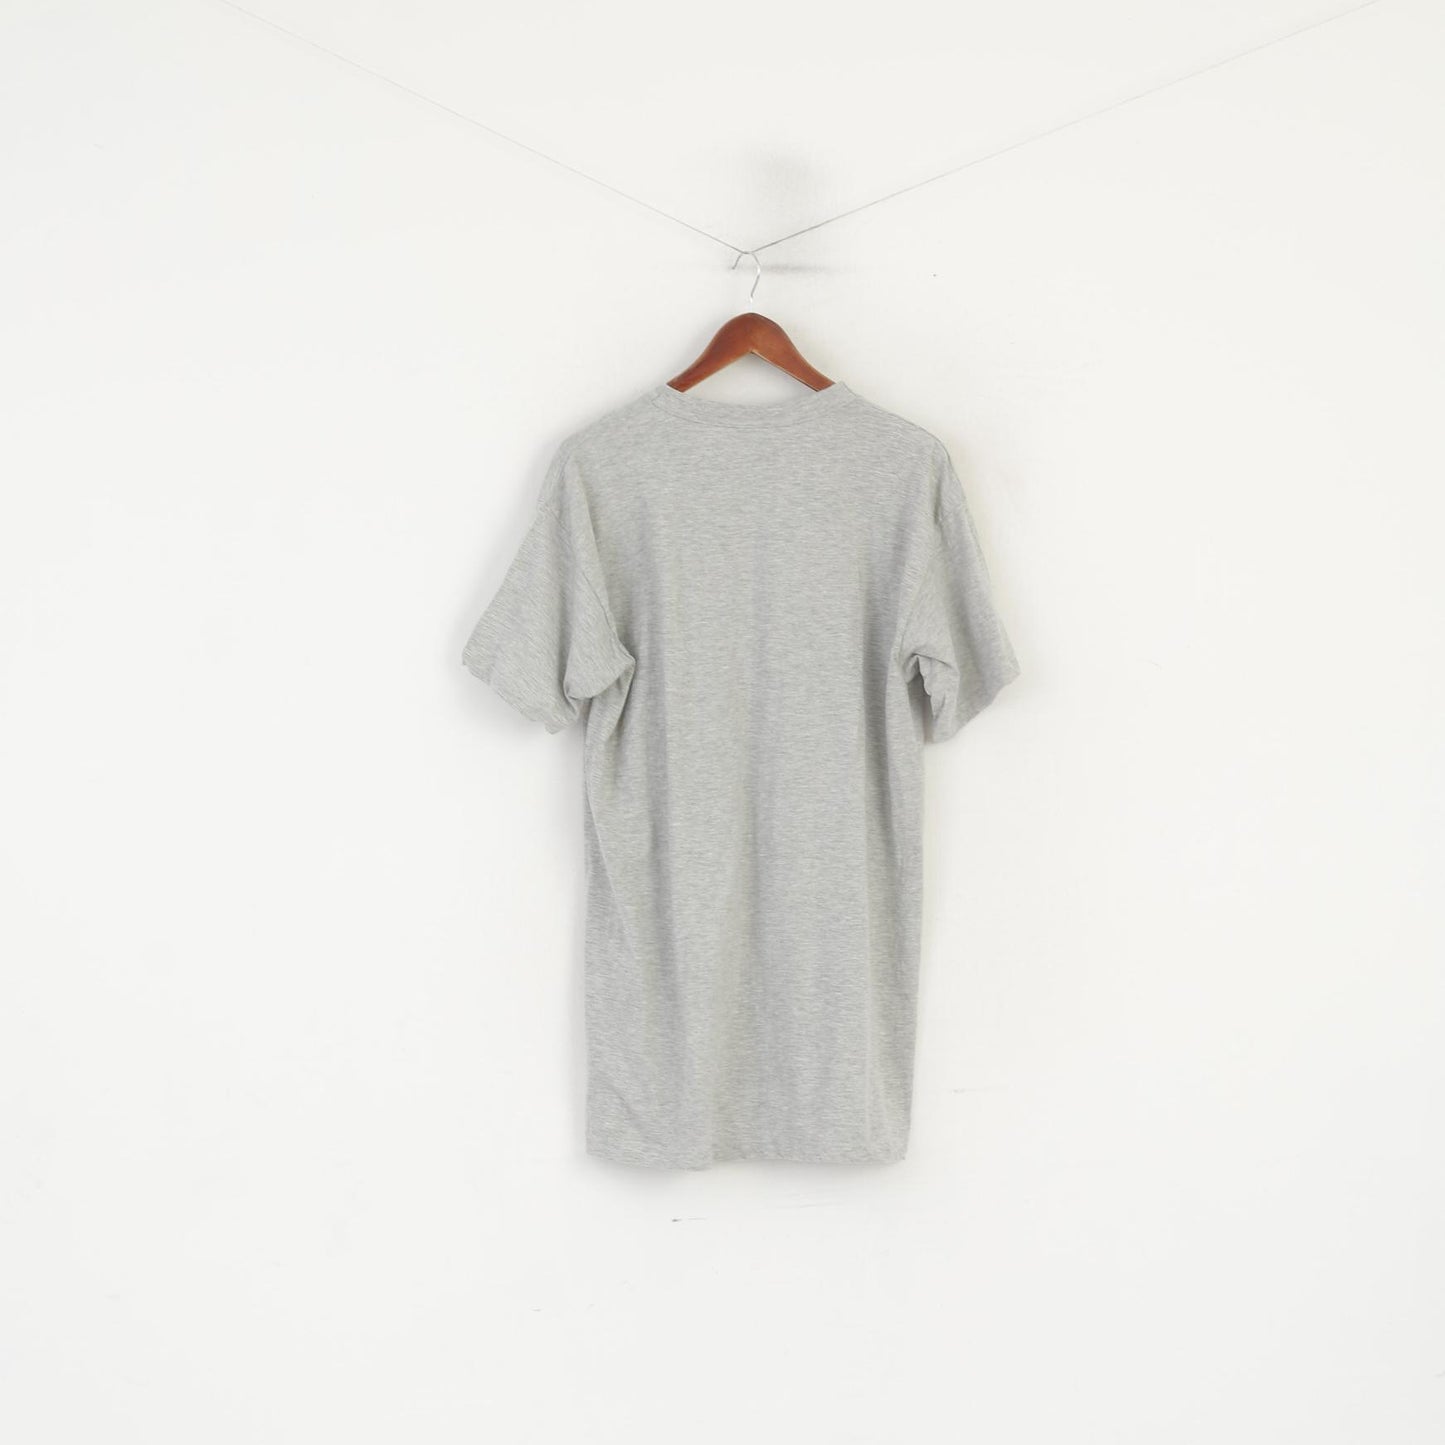 T-shirt Sergio Tacchini da uomo XXL in cotone grigio, lunga, alta, con logo grafico